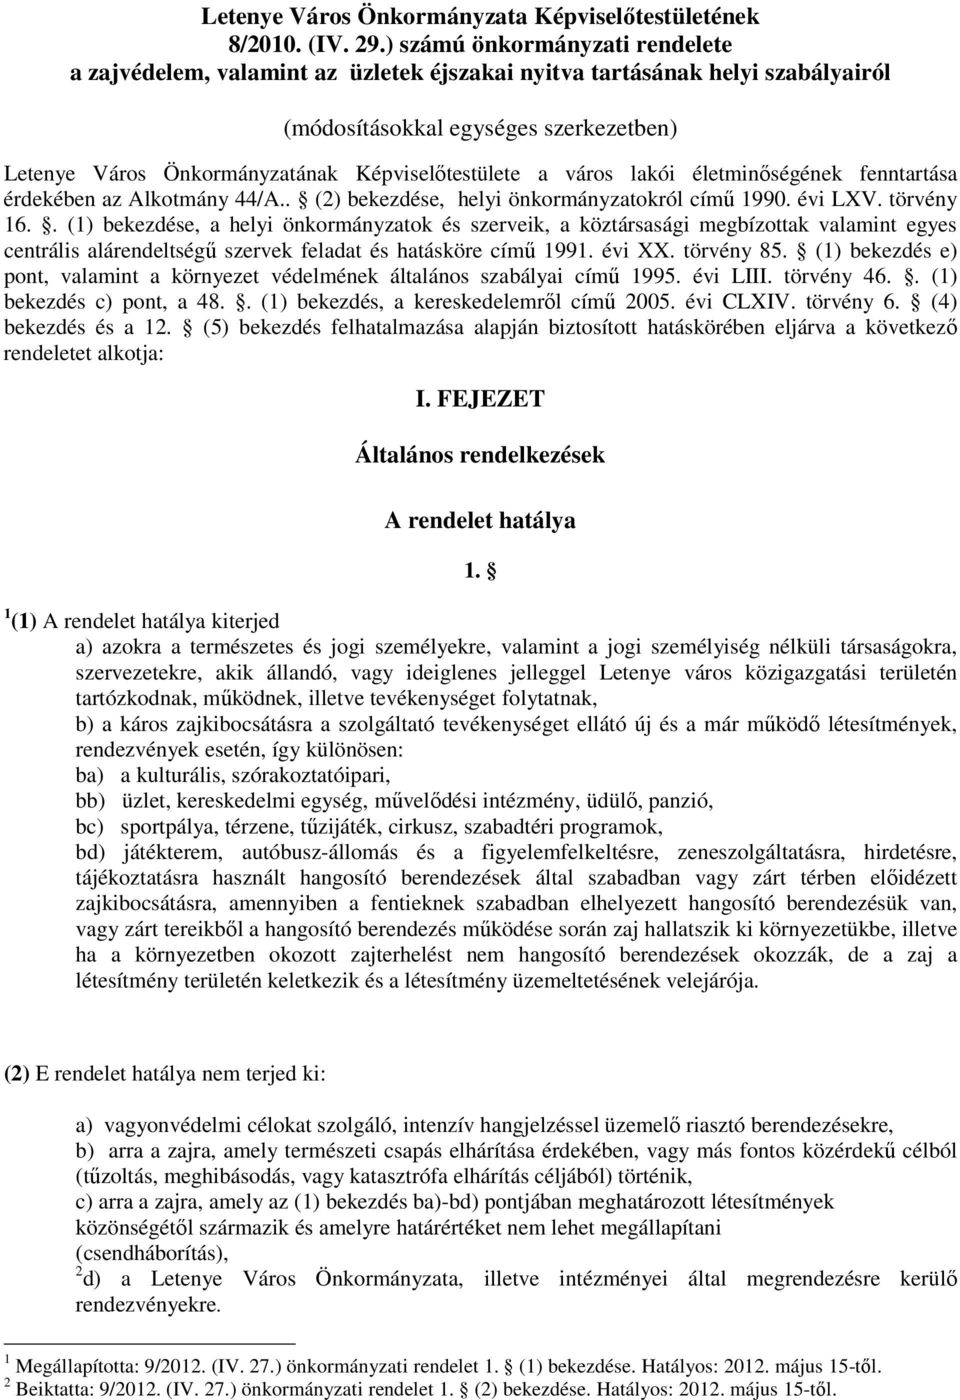 Képviselıtestülete a város lakói életminıségének fenntartása érdekében az Alkotmány 44/A.. (2) bekezdése, helyi önkormányzatokról címő 1990. évi LXV. törvény 16.